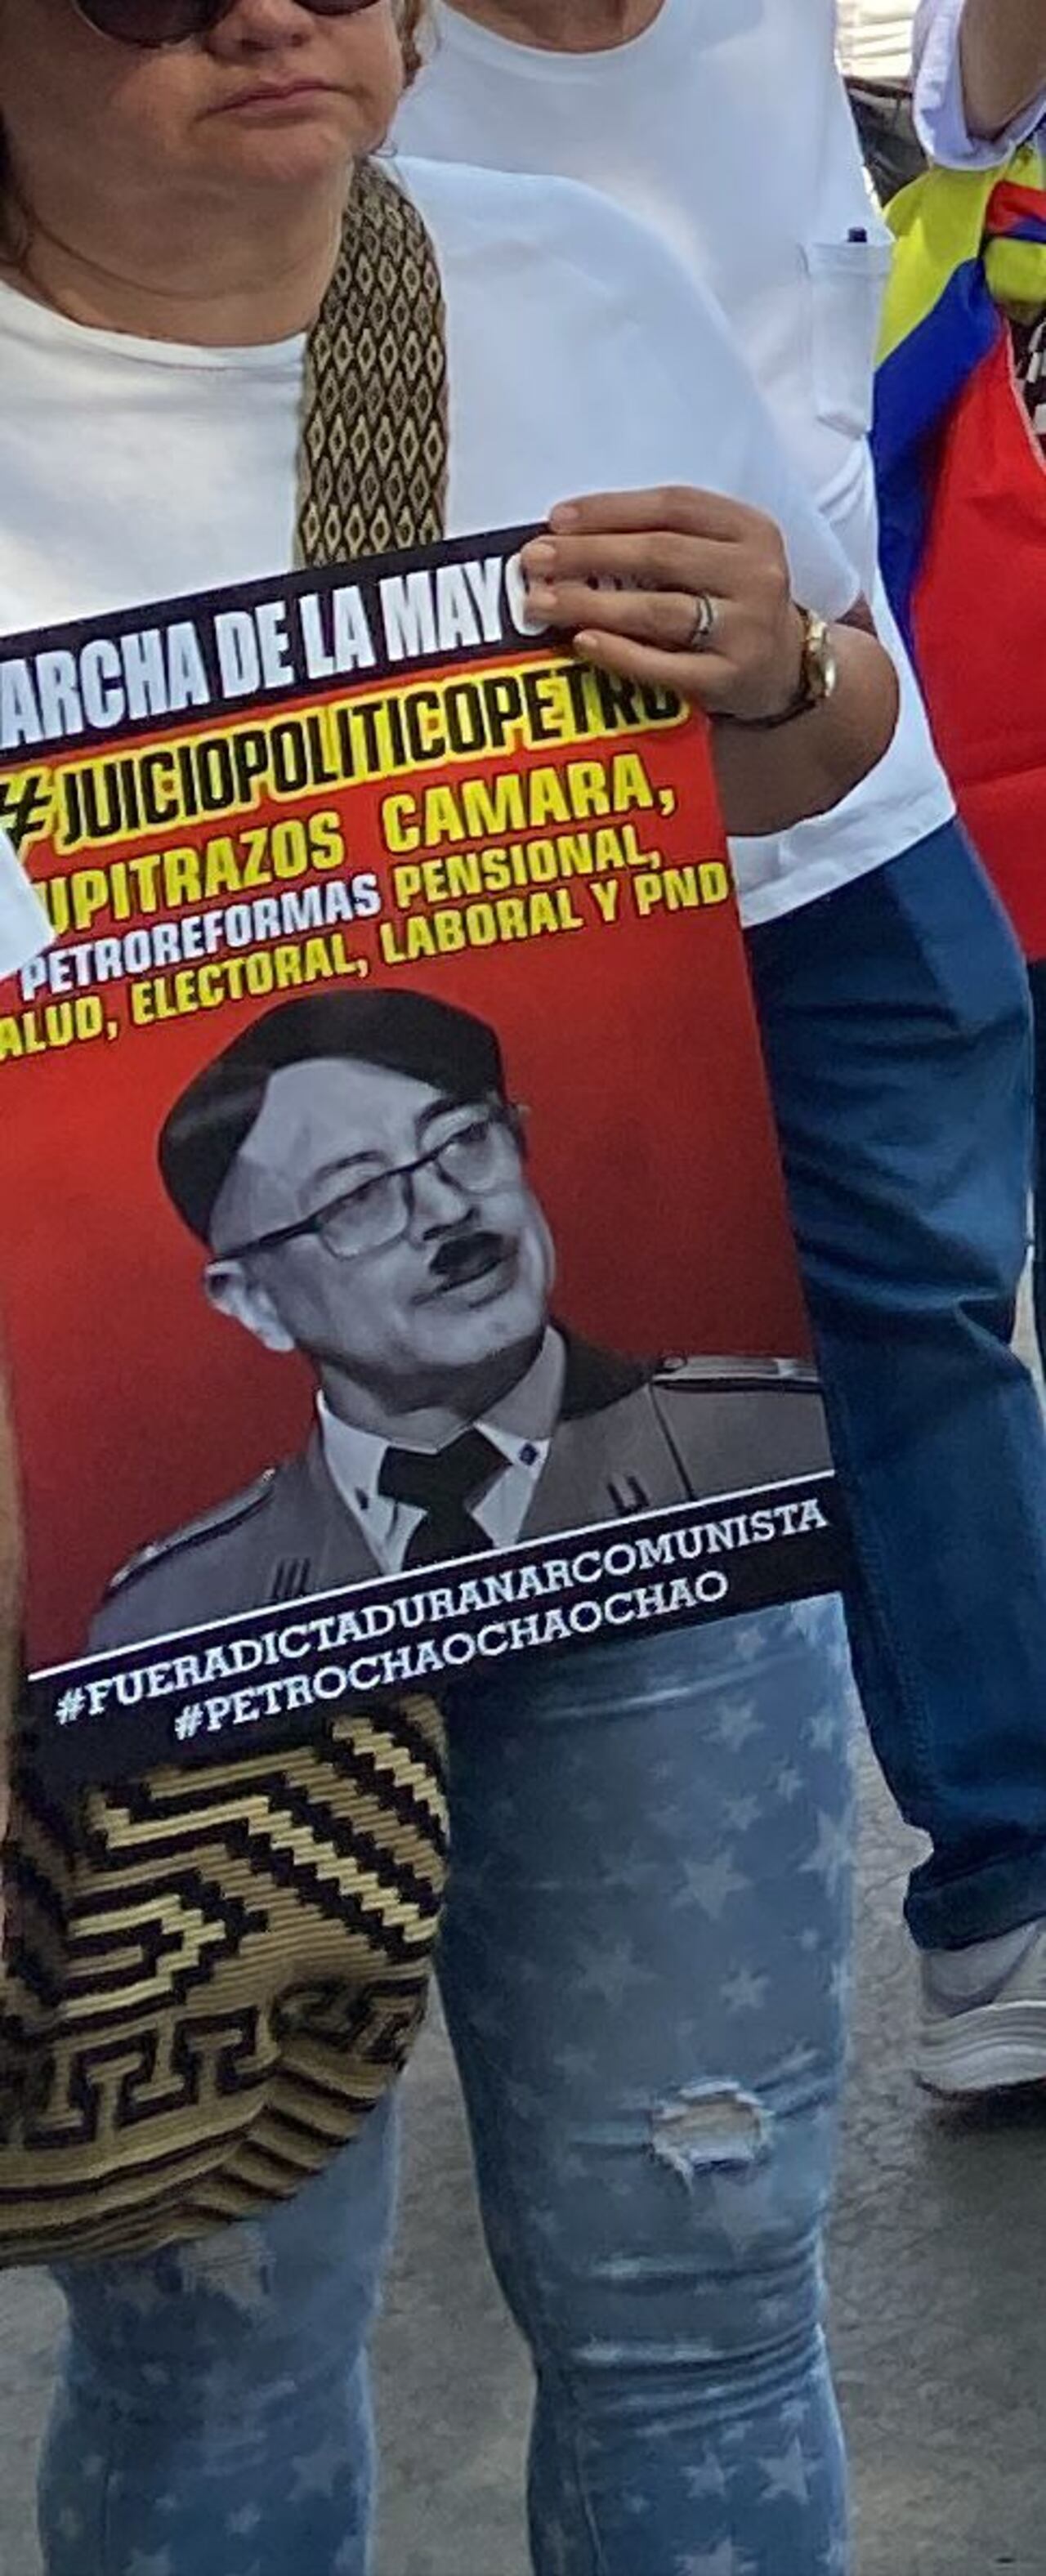 Imagen alterada del presidente Gustavo Petro como Hitler